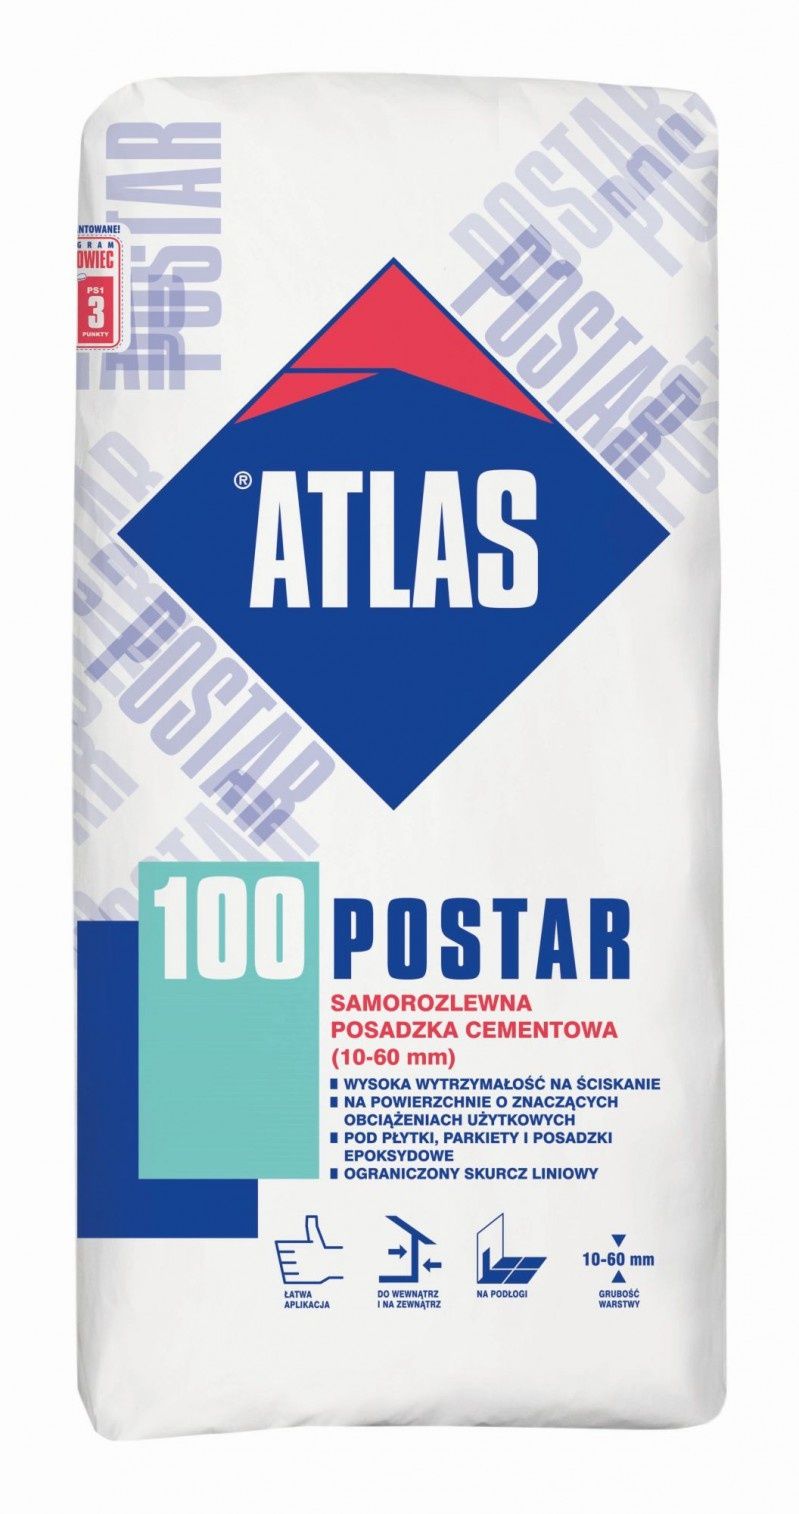 ATLAS Postar - produkty do zadań specjalnych